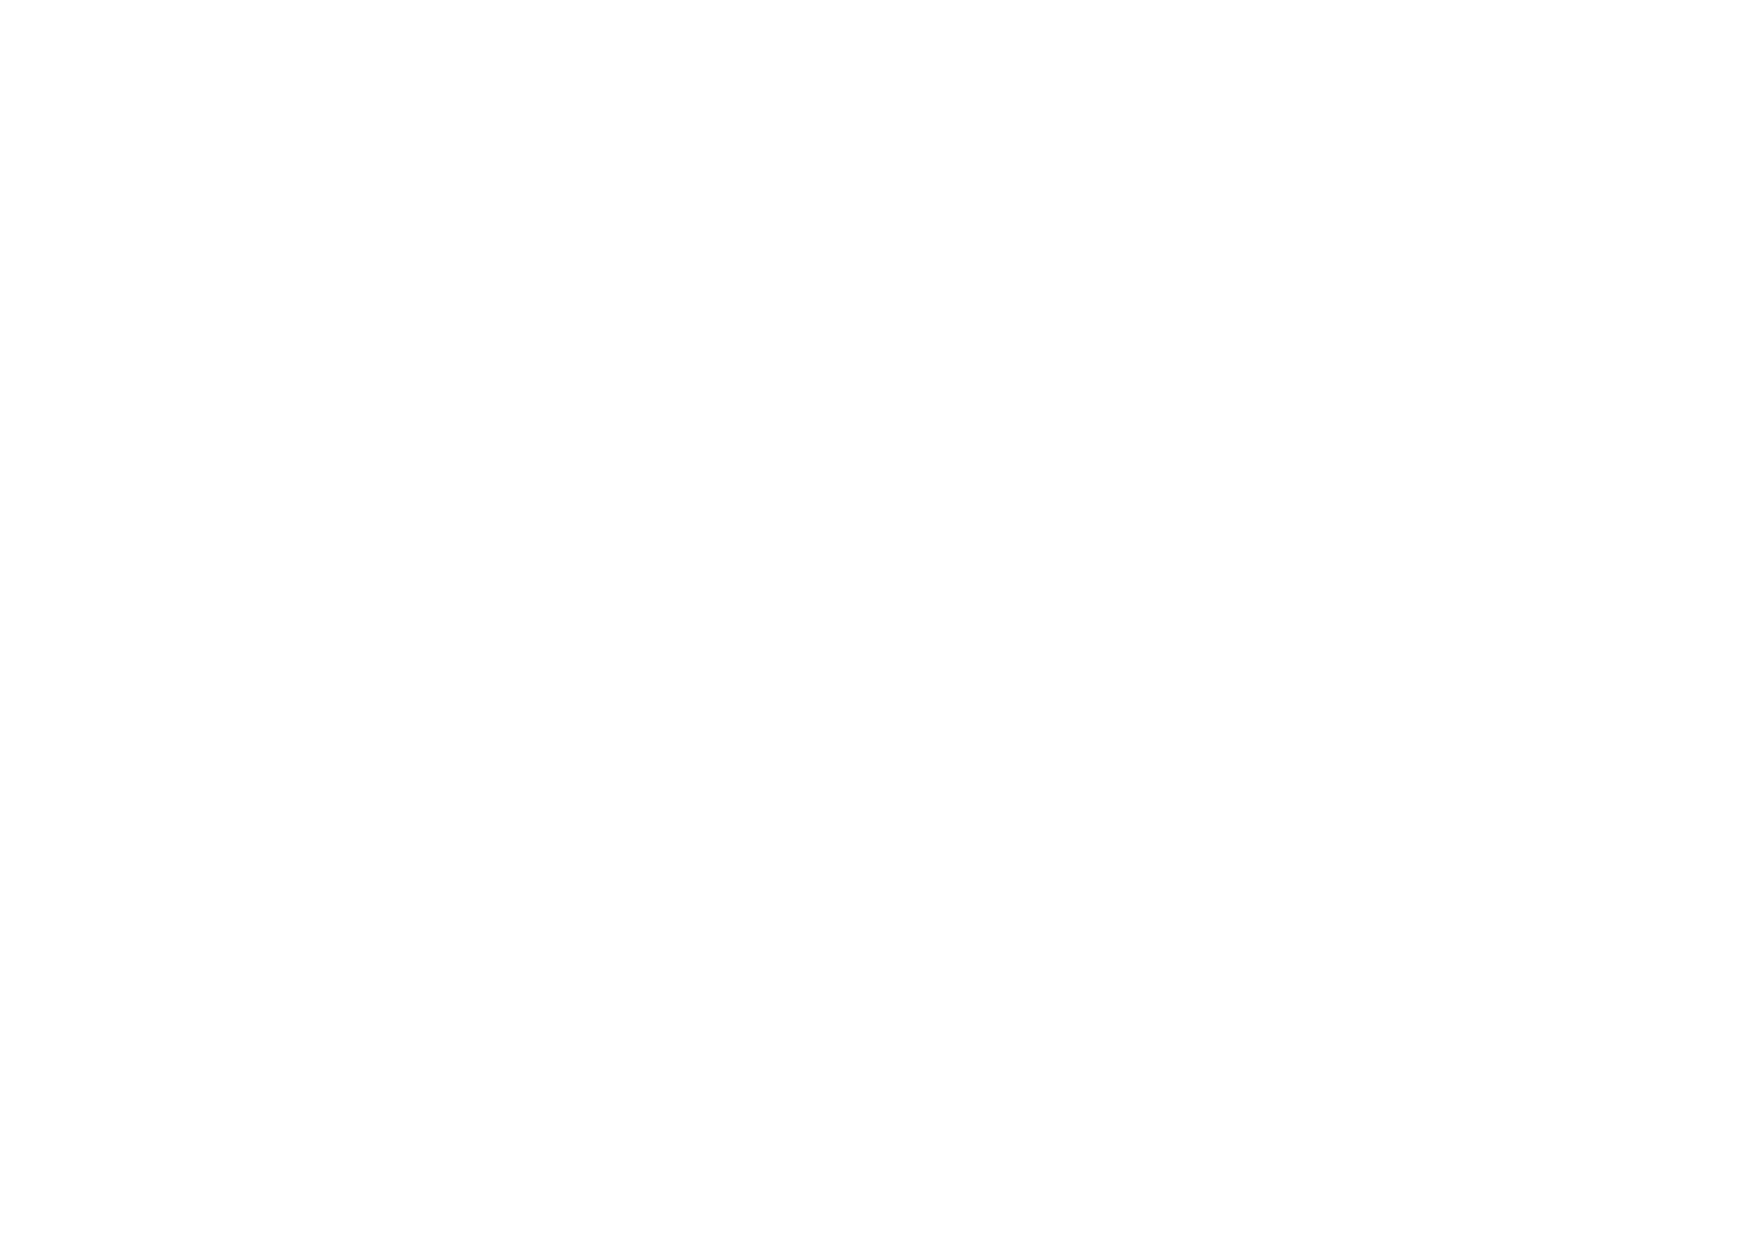 Harada MusicalInstruments Manufactuaer LLC JAPAN